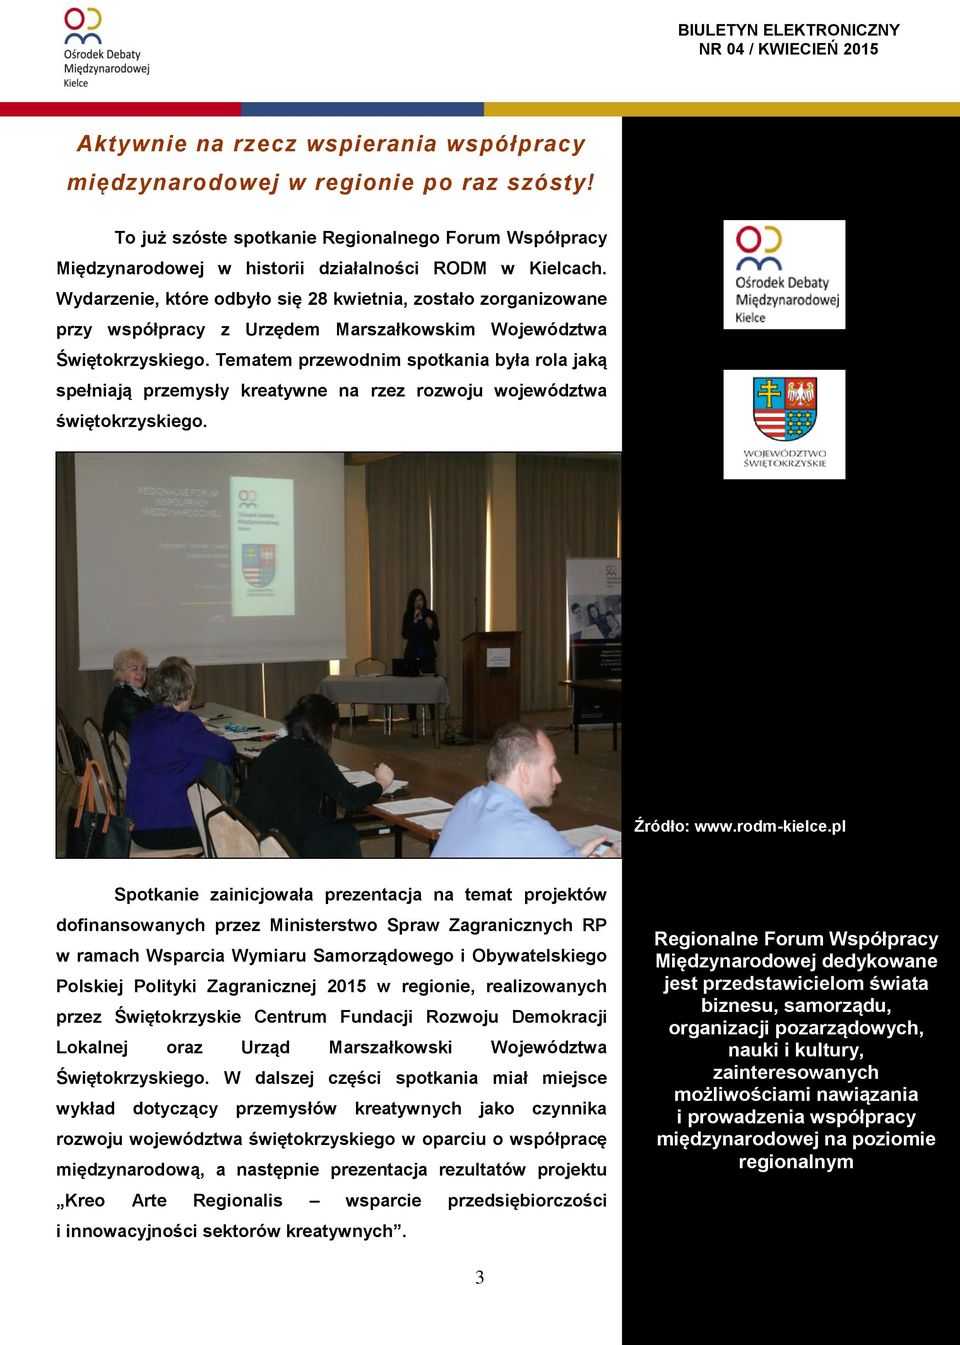 Tematem przewodnim spotkania była rola jaką spełniają przemysły kreatywne na rzez rozwoju województwa świętokrzyskiego. Źródło: www.rodm-kielce.